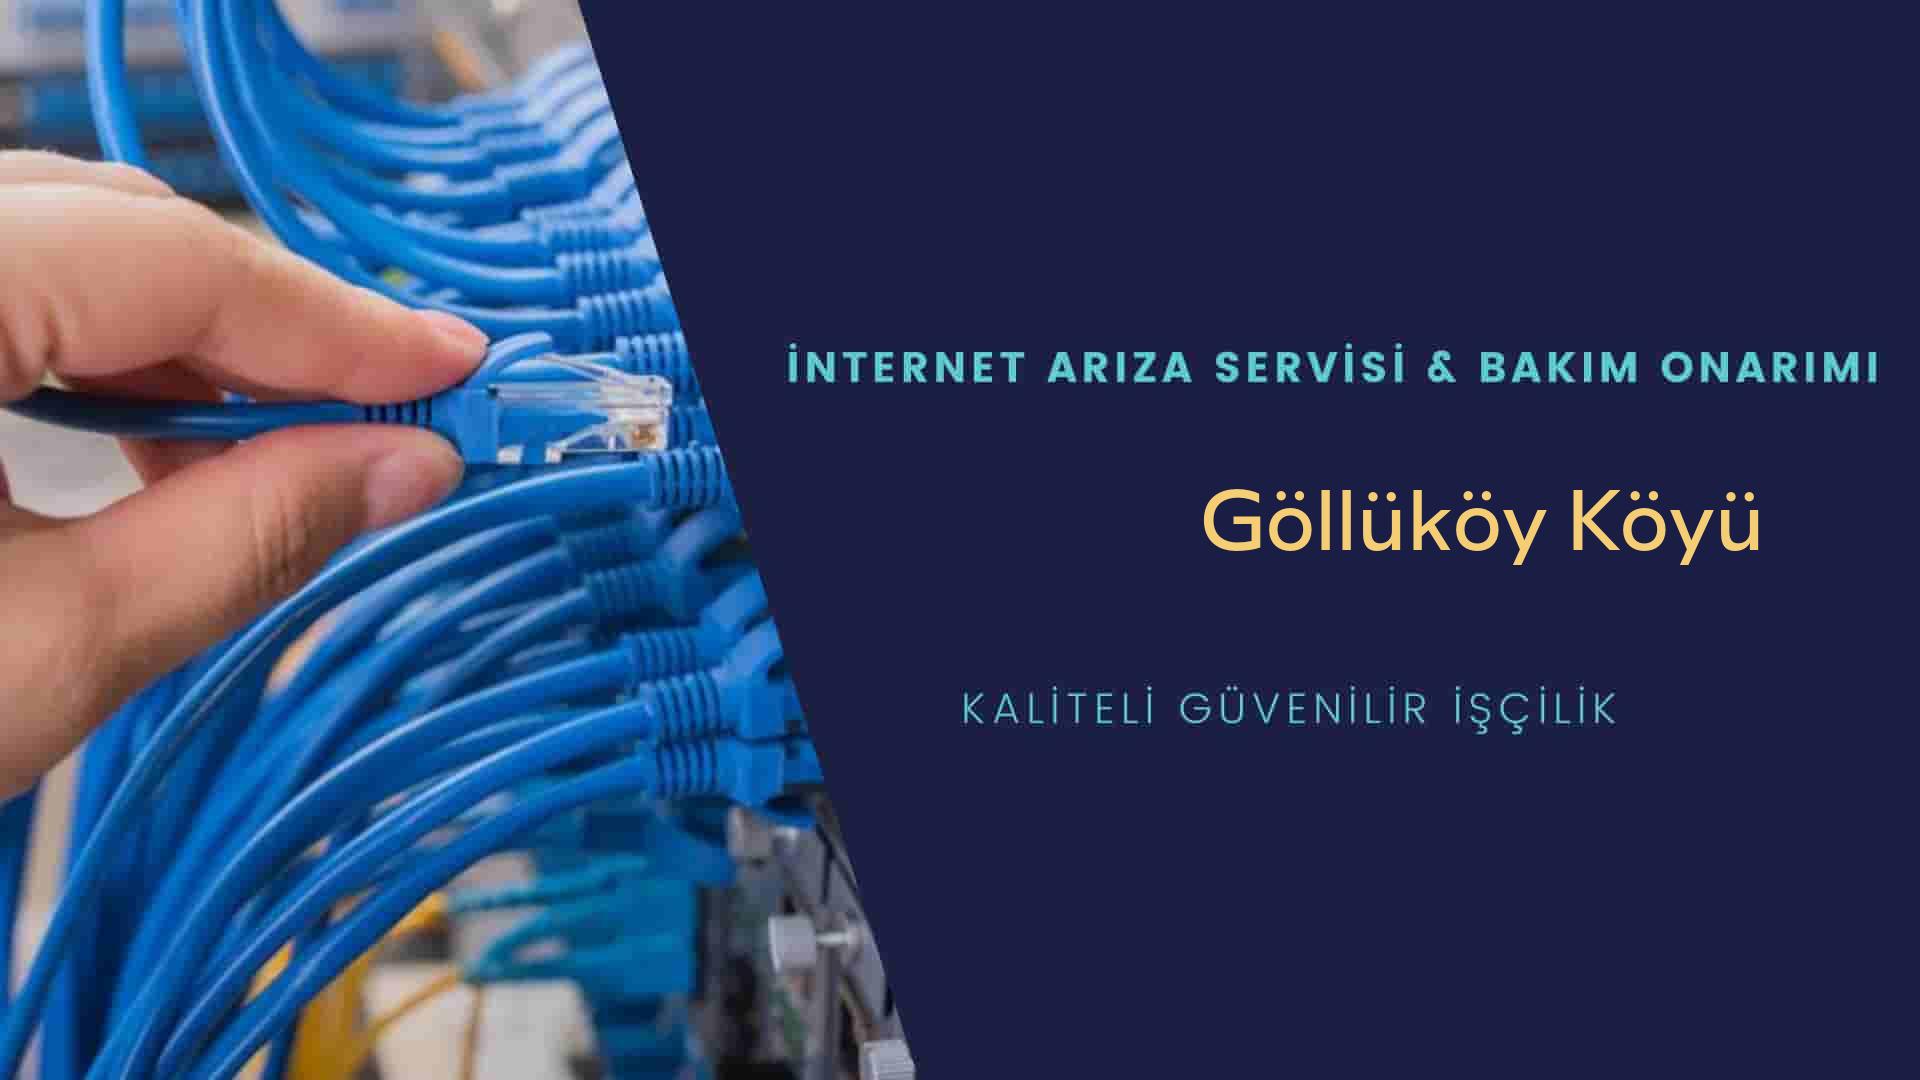 Göllüköy Köyü internet kablosu çekimi yapan yerler veya elektrikçiler mi? arıyorsunuz doğru yerdesiniz o zaman sizlere 7/24 yardımcı olacak profesyonel ustalarımız bir telefon kadar yakındır size.